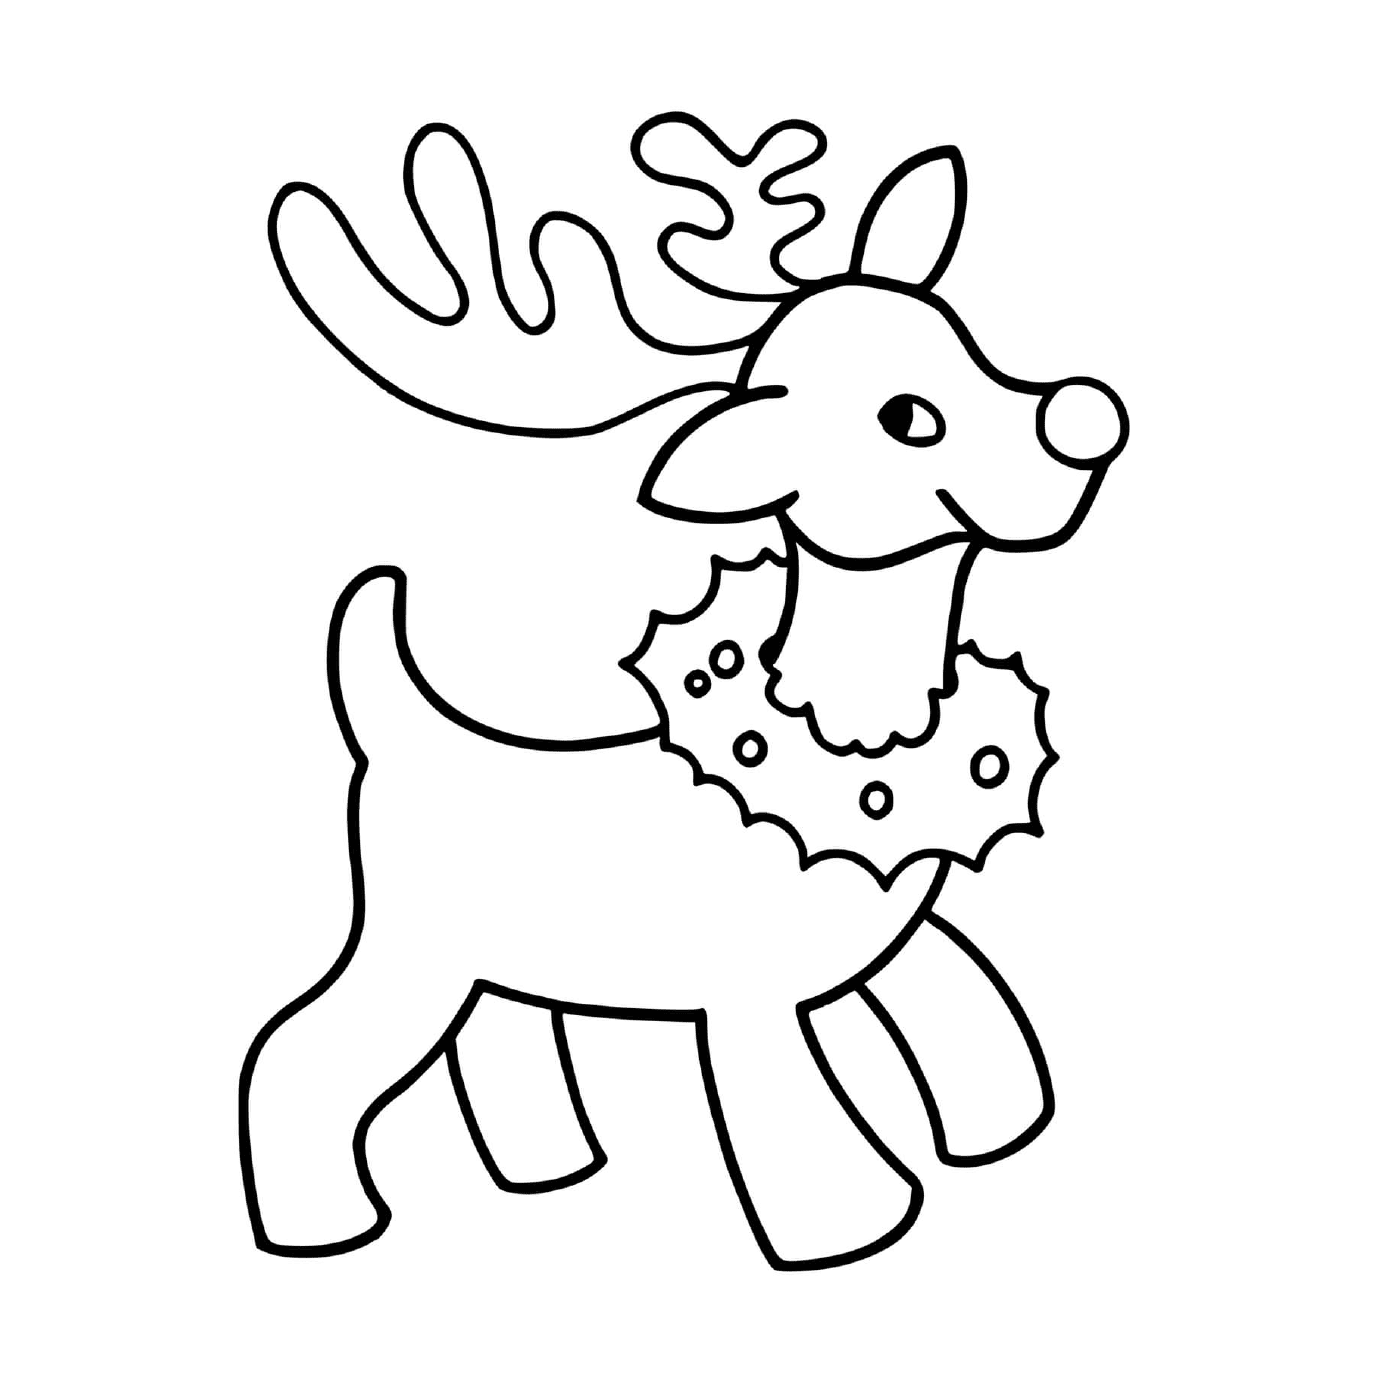  Una renna natalizia facile da disegnare per i bambini dell'asilo 